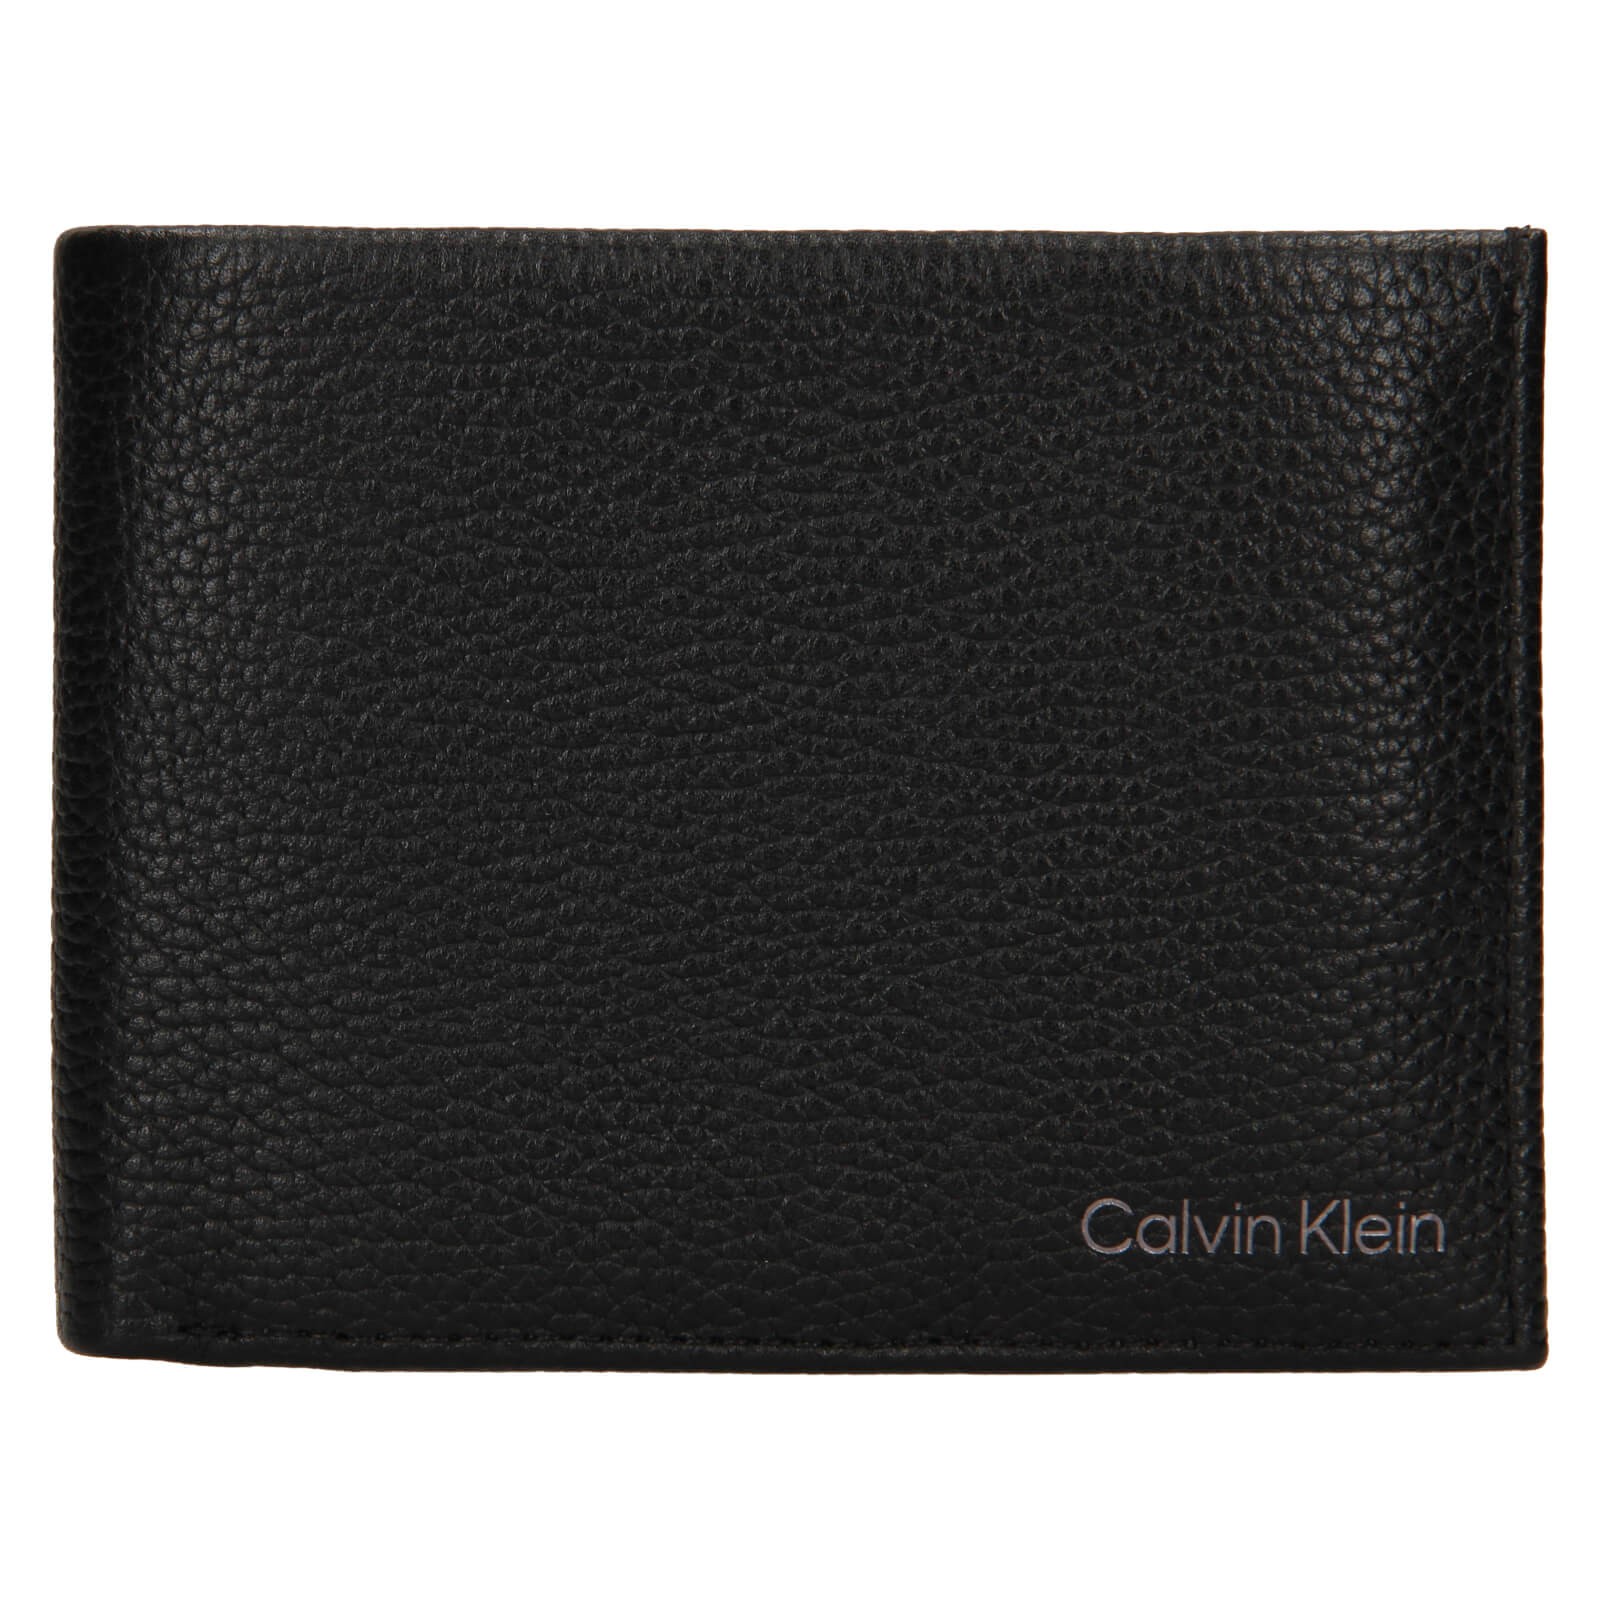 Pánska kožená peňaženka Calvin Klein Valer - čierna.